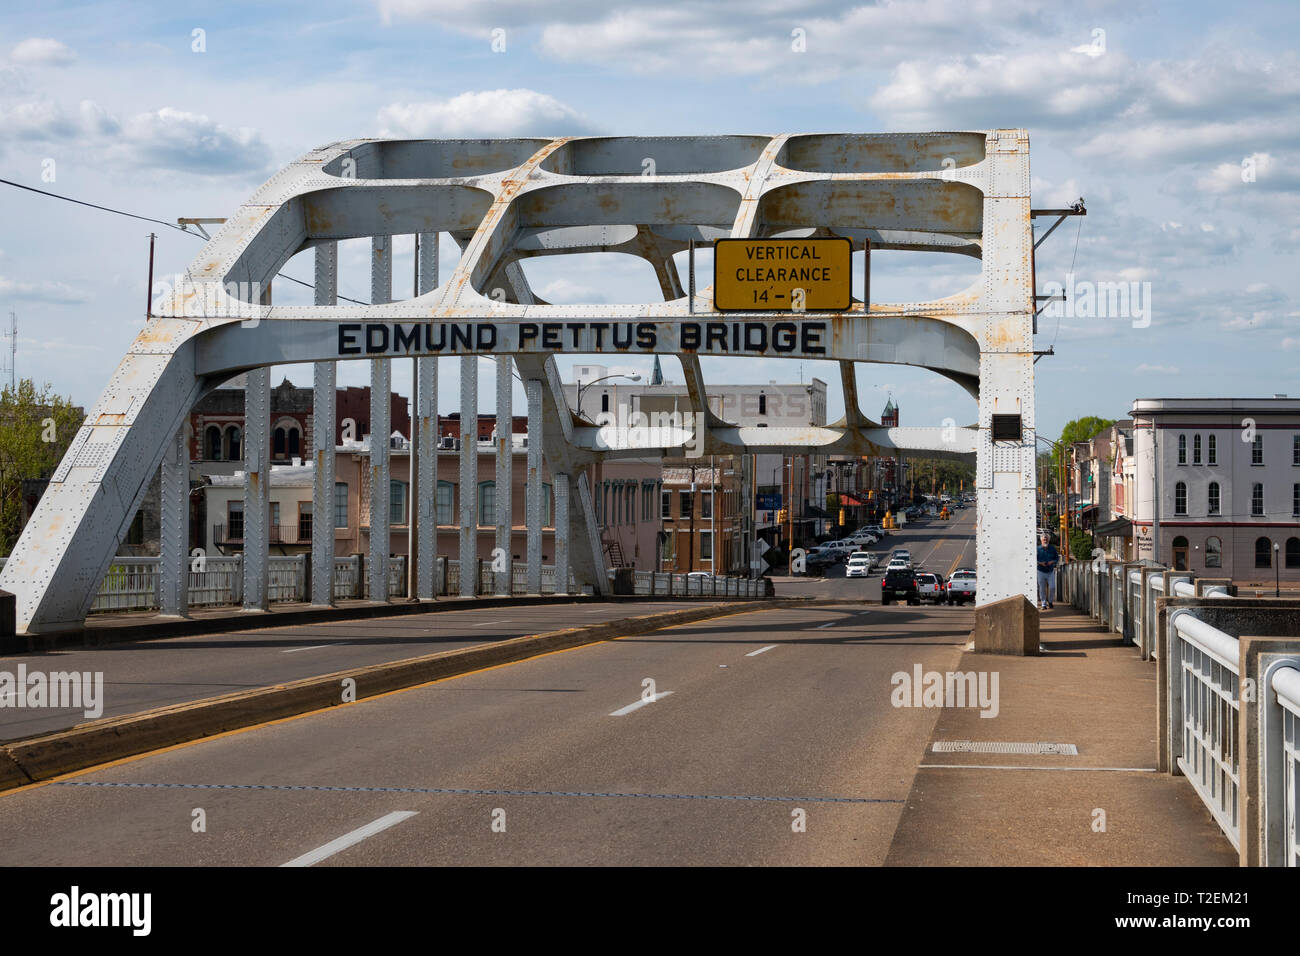 USA Alabama Selma Edmund Pettus Bridge sur la rivière Alabama Site de l'attaque sur le Dimanche sanglant de 1965 marcheurs Américains africains Banque D'Images